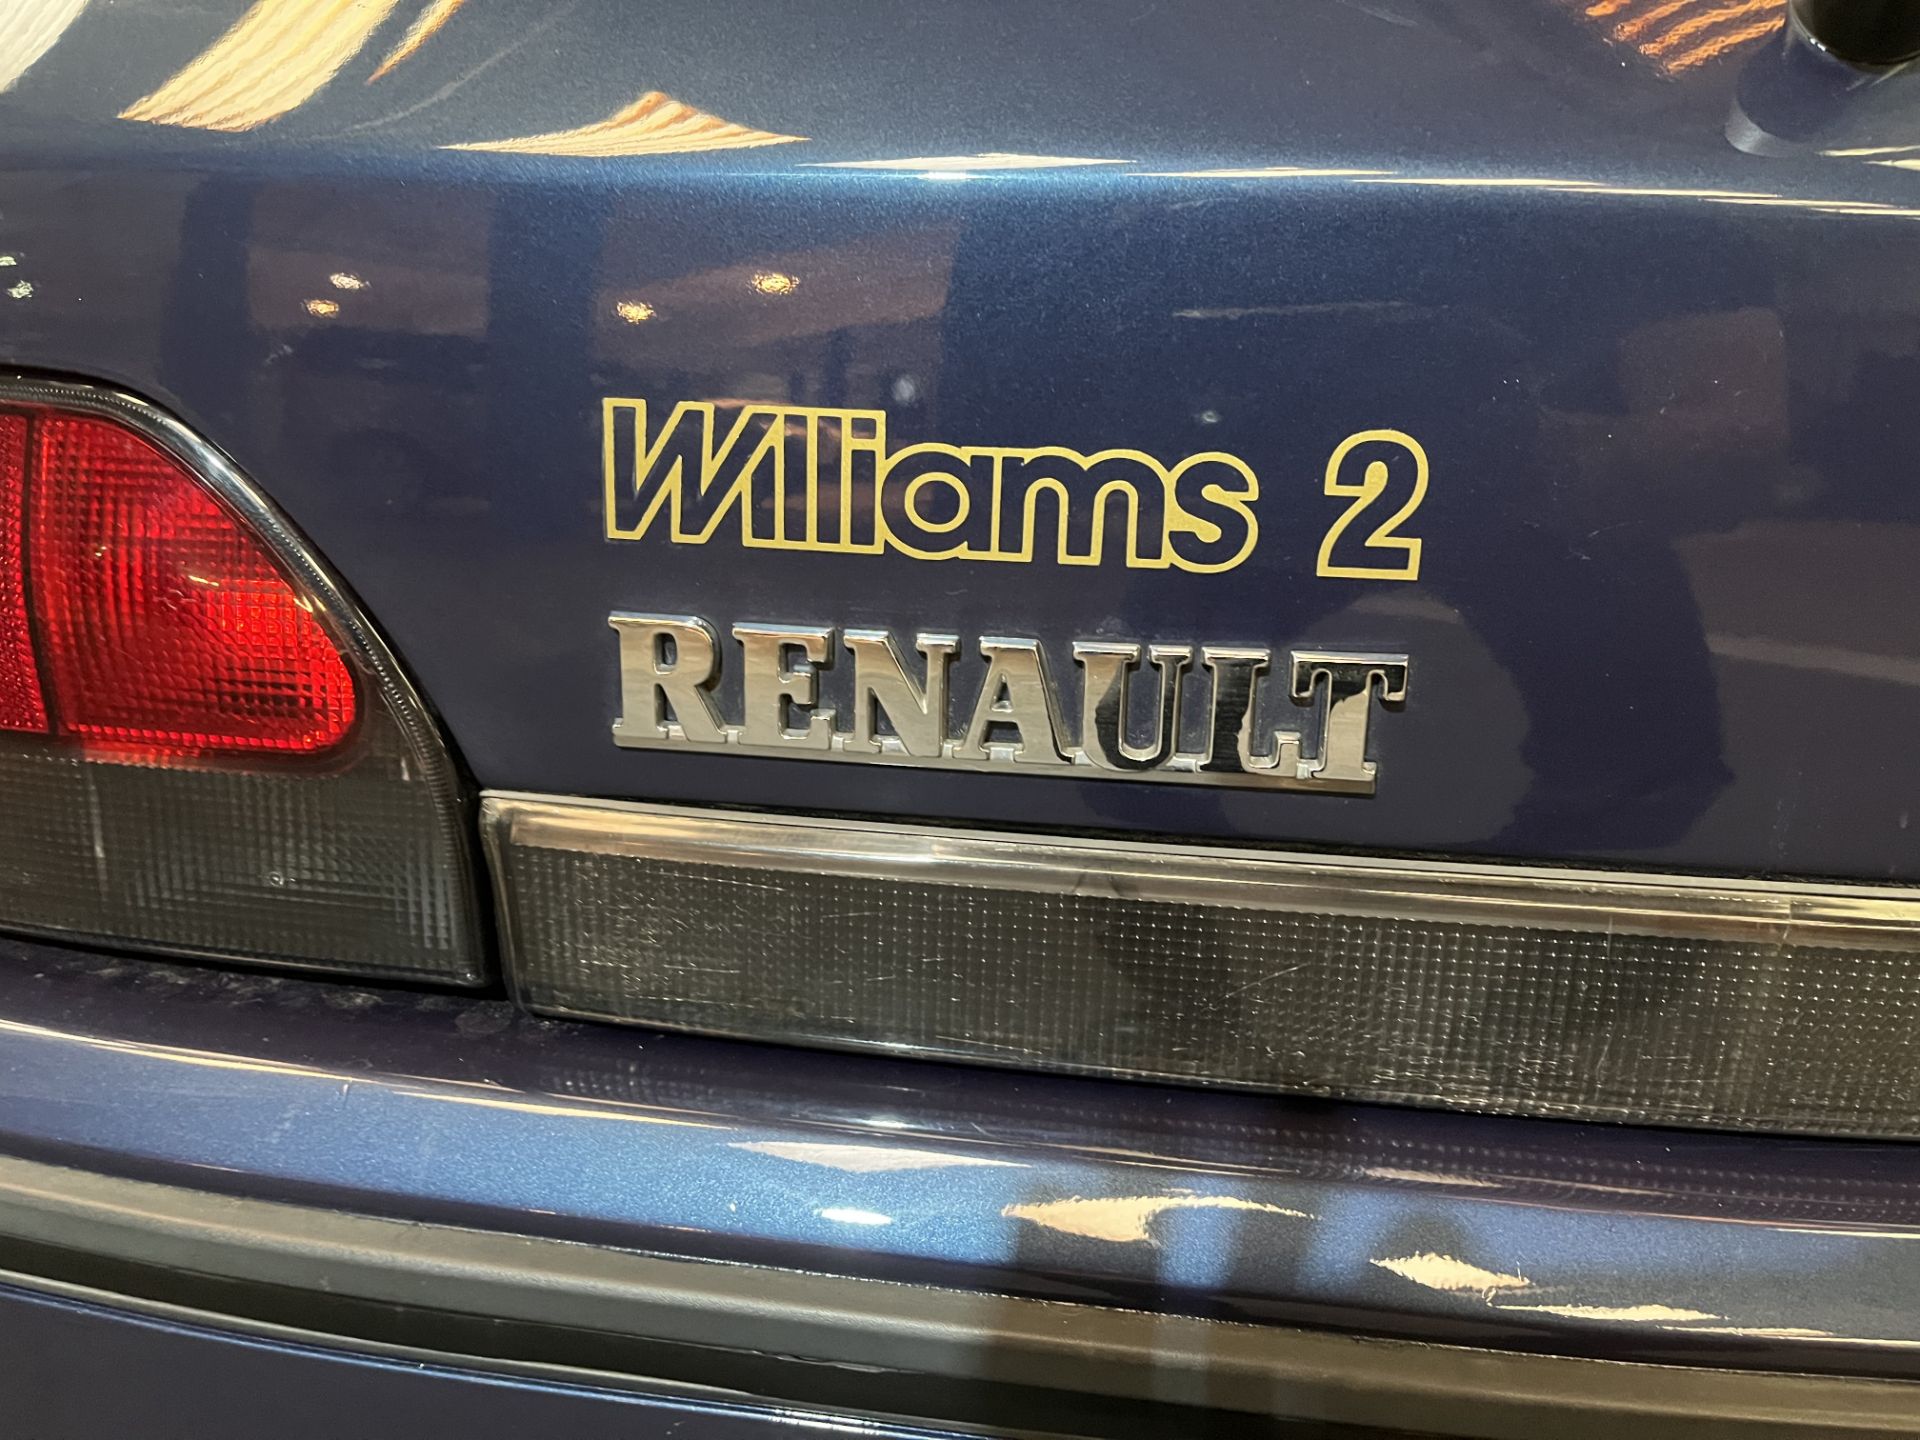 1995 Renault Clio Williams 2 - 1998cc - Image 17 of 21